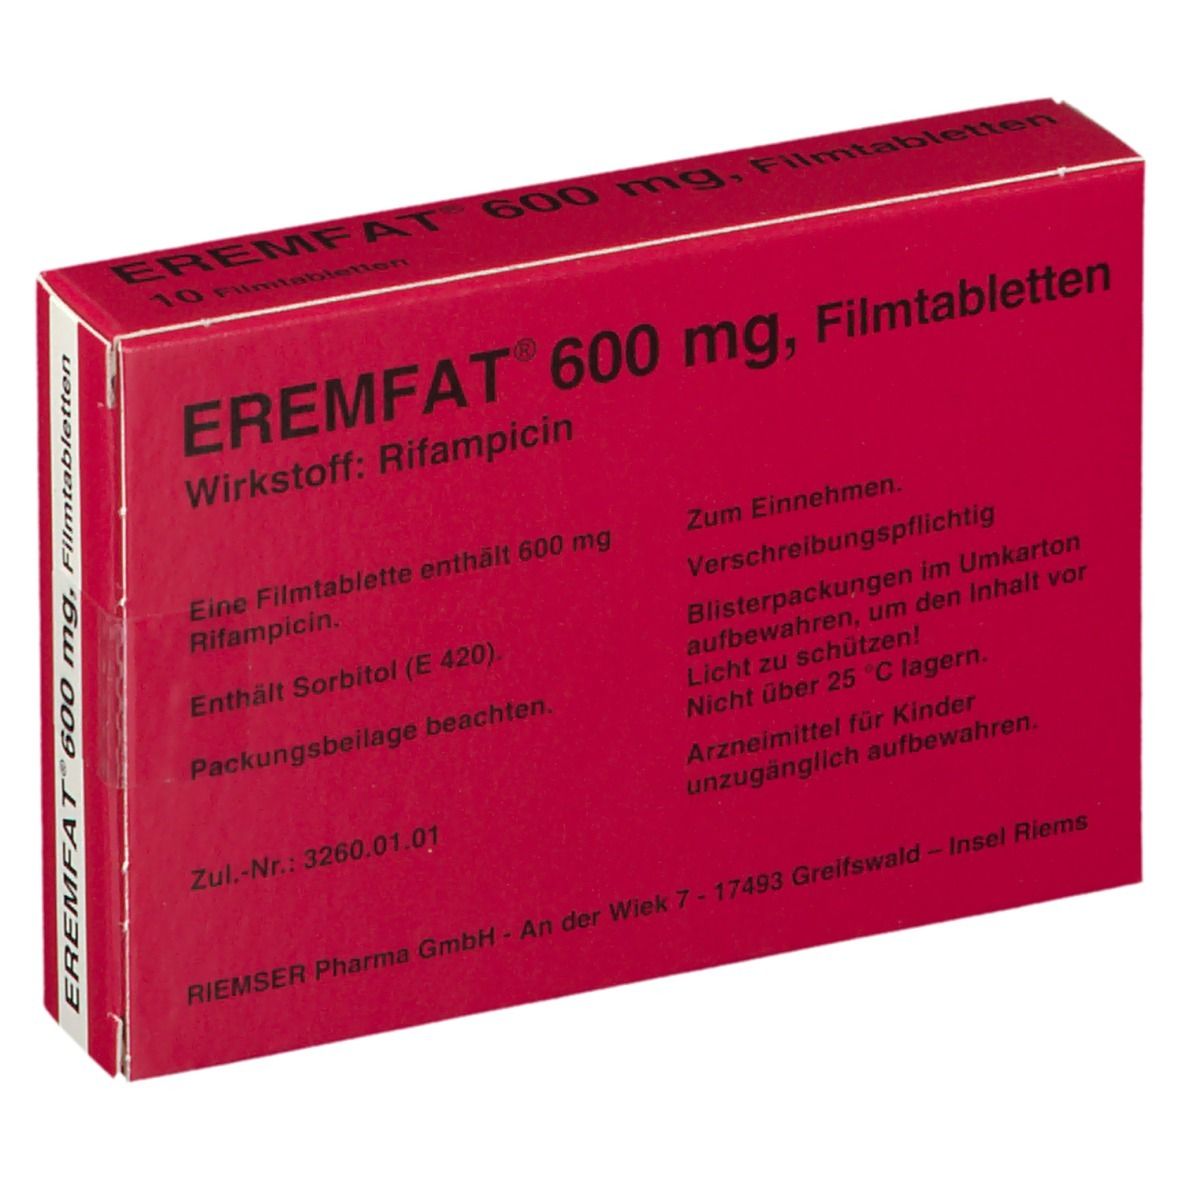 EREMFAT® 600 mg